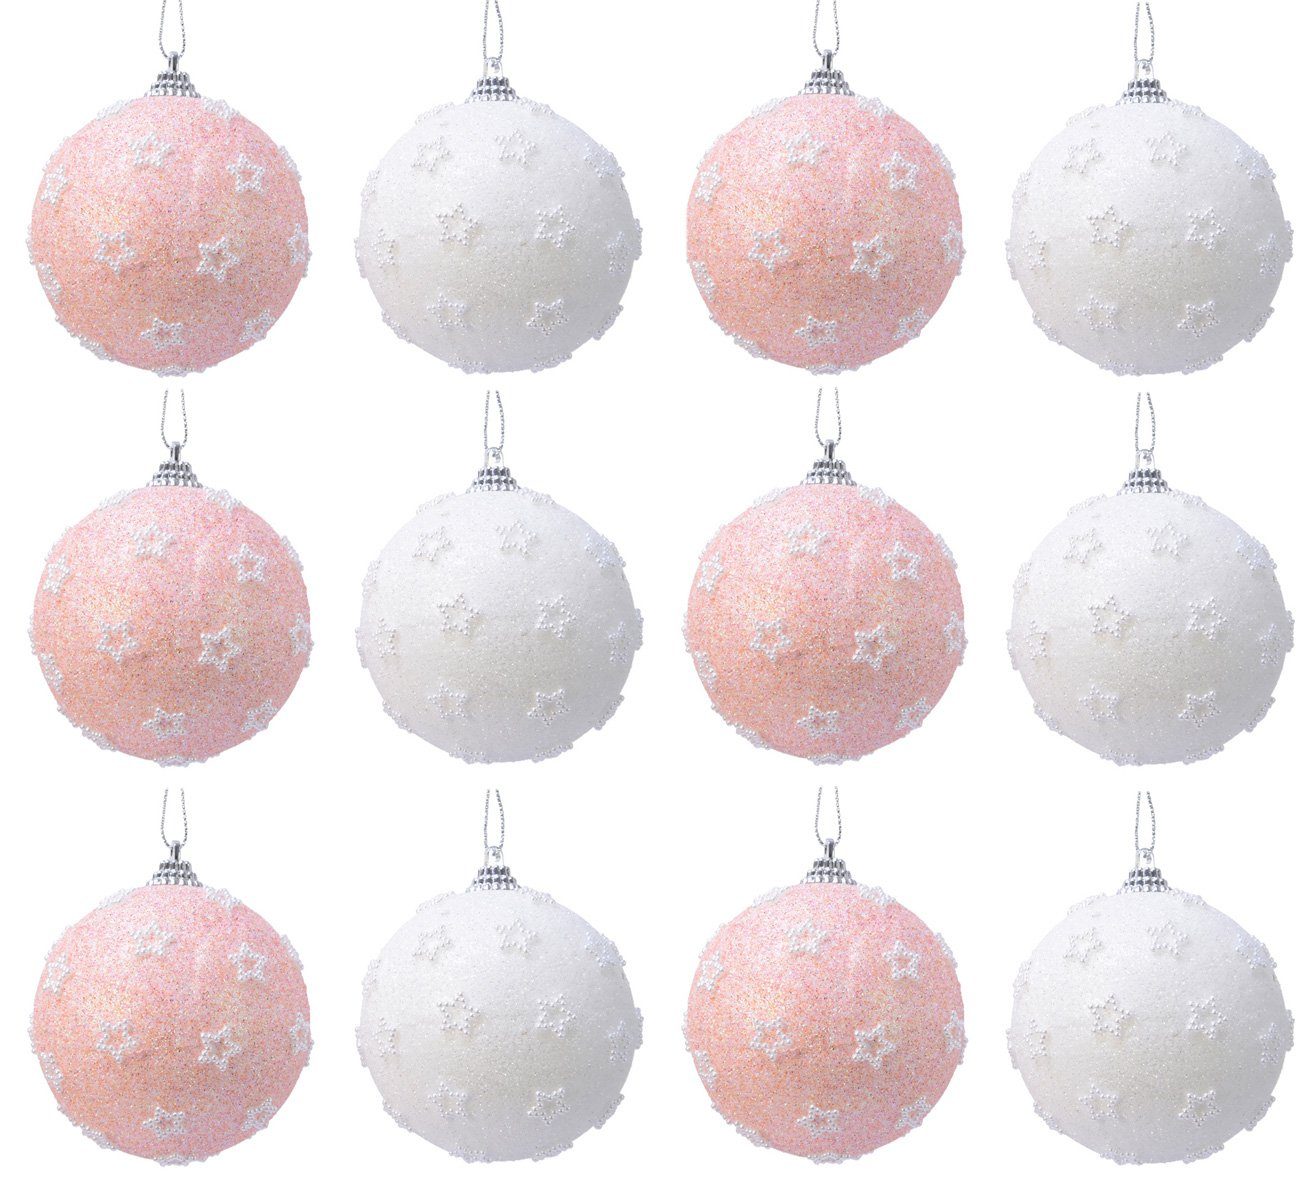 Decoris season decorations Weihnachtsbaumkugel, Weihnachtskugeln Kunststoff 8cm Perlen Sterne 12er Set - Rosa / Weiß